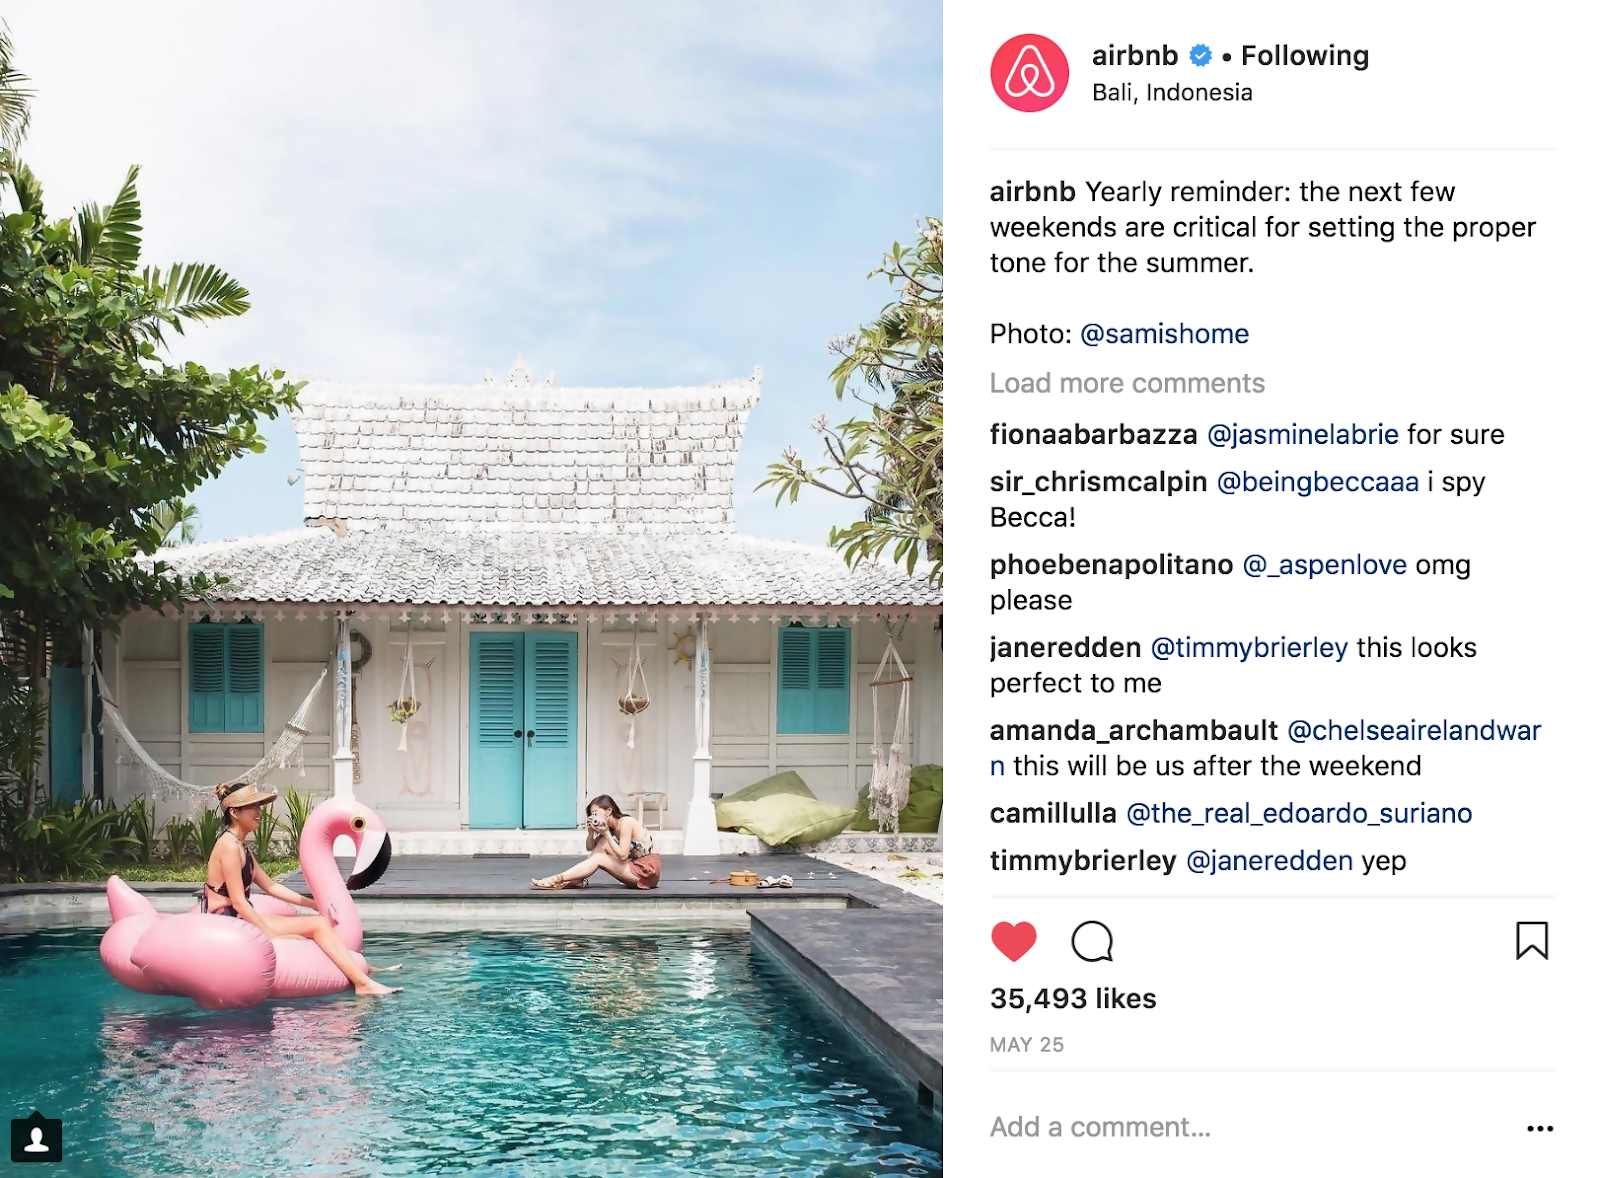 Wählen Sie eine Bildunterschrift mit Bezug auf den Inhalt Ihres Fotos. Airbnb Beispiel